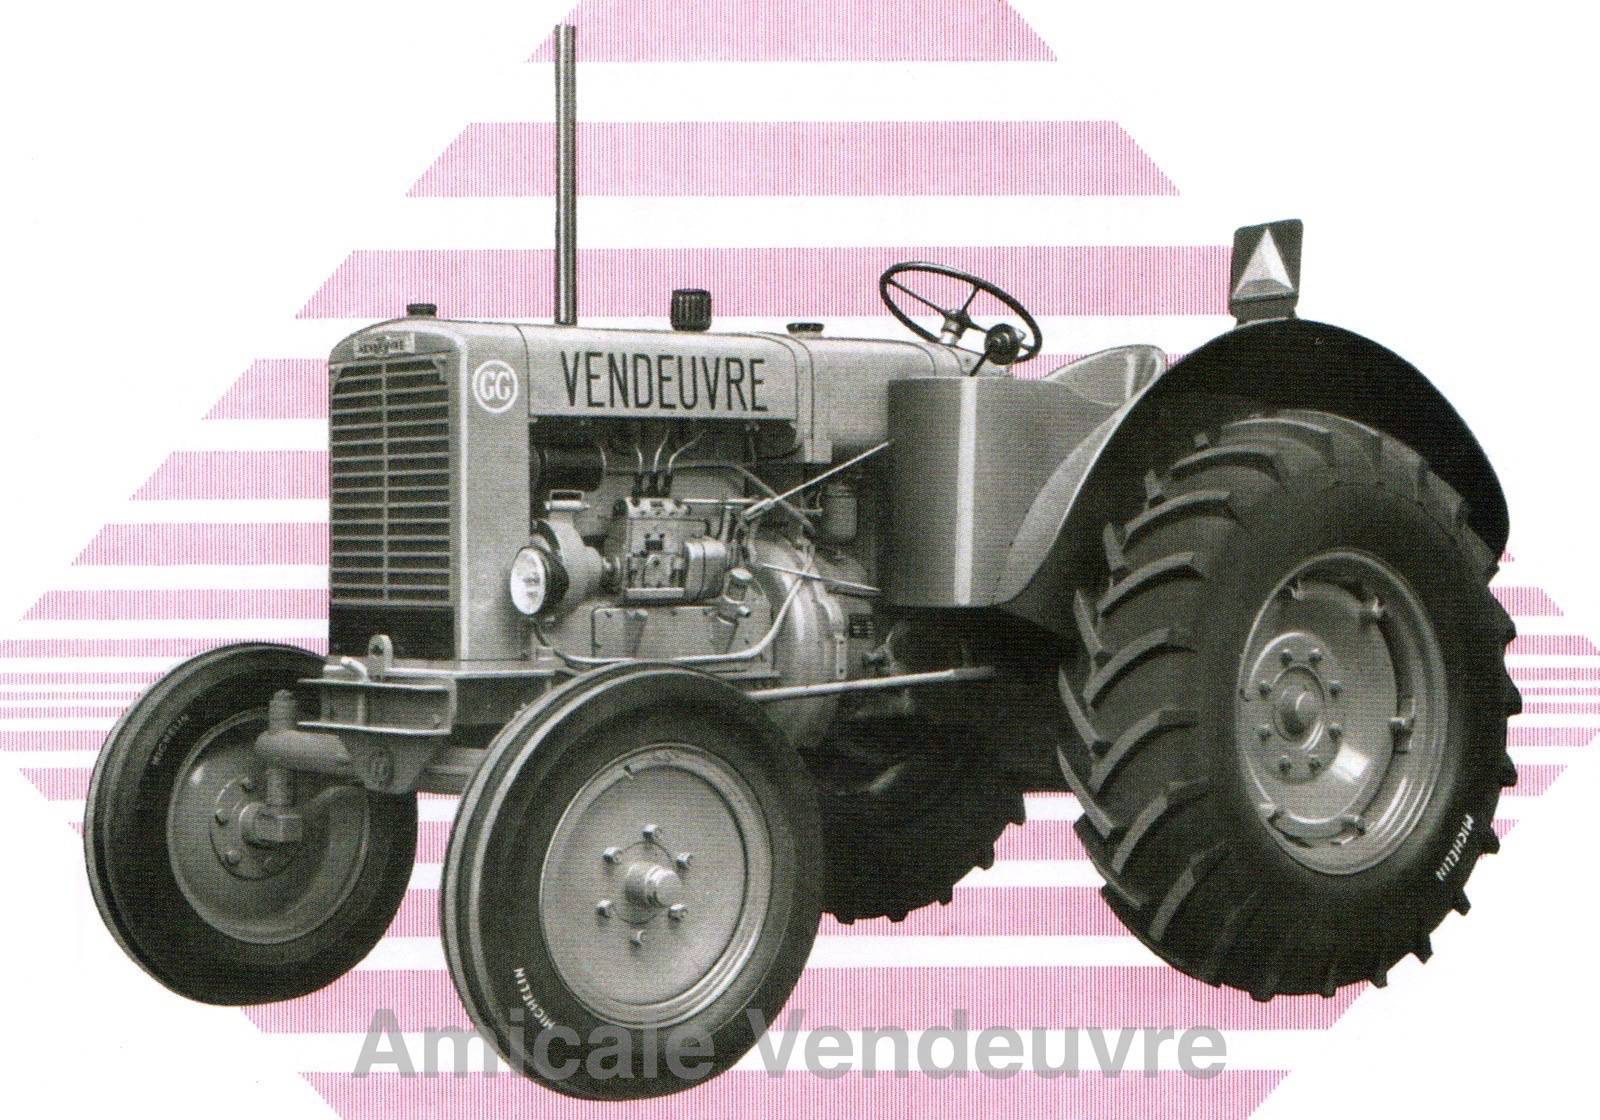 Tracteur Vendeuvre GG